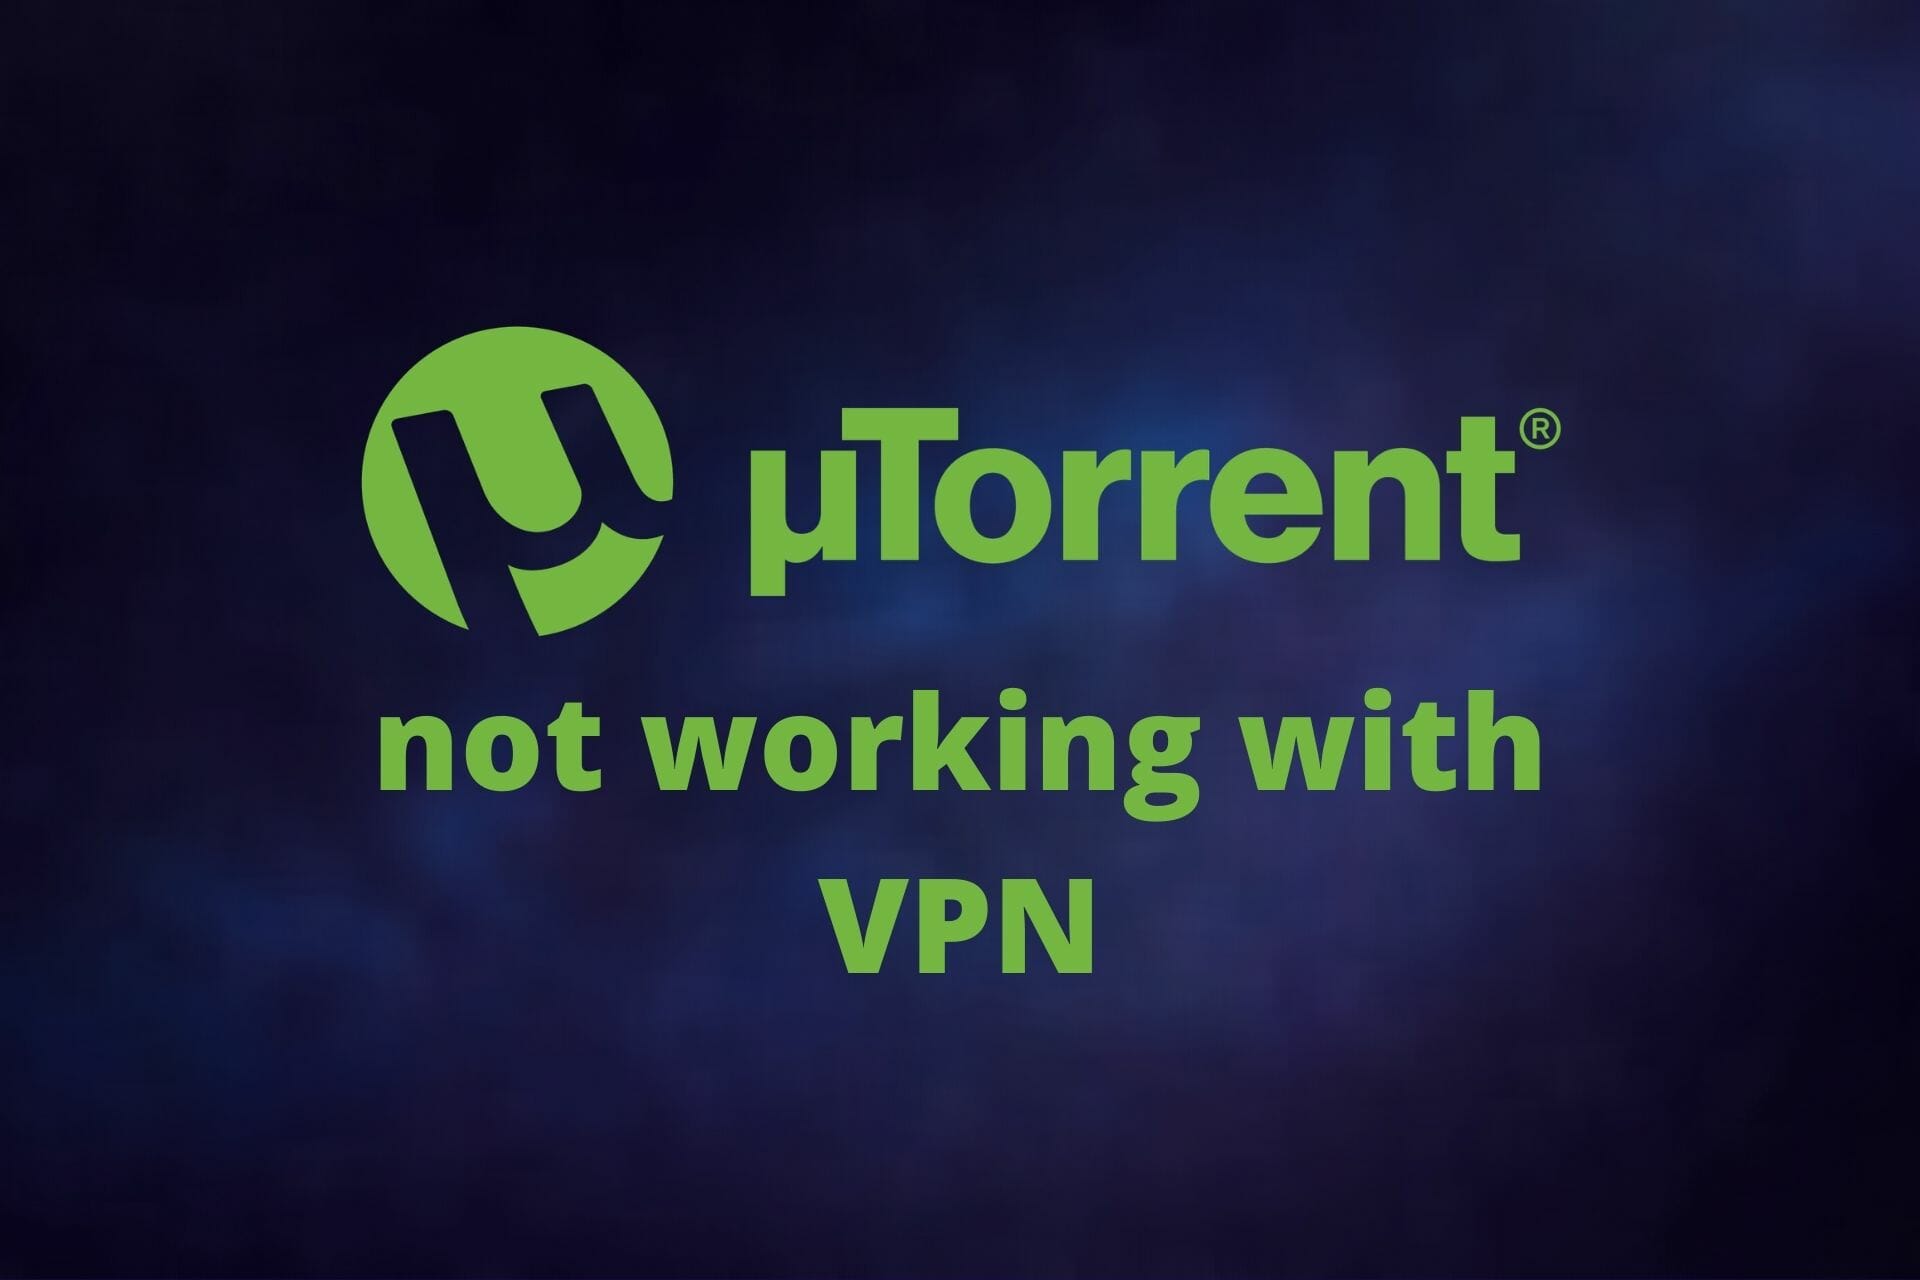 uTorrent not working with VPN